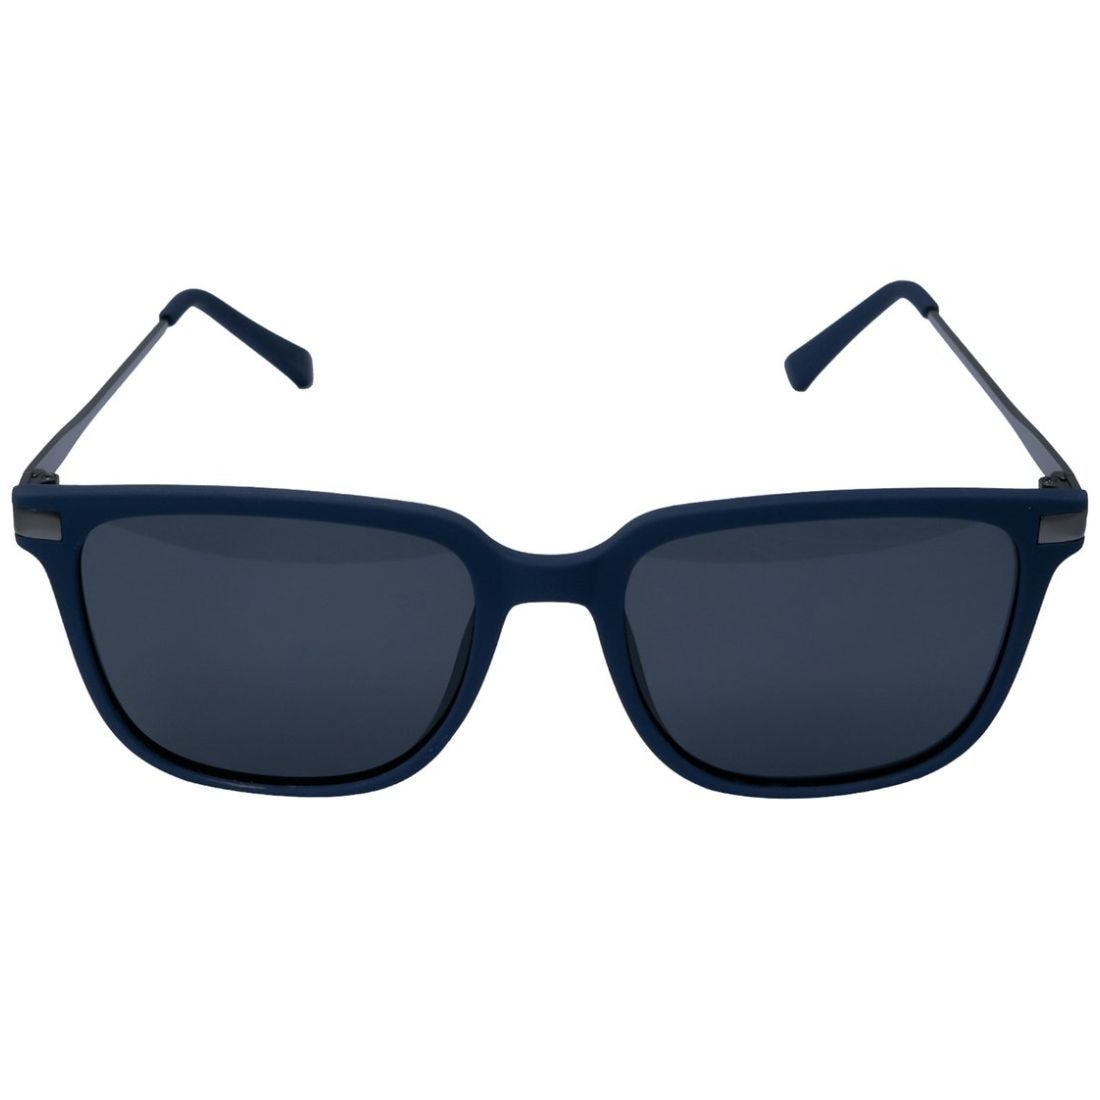 Gafas de sol oversize mujer con lentes polarizadas negras UV400